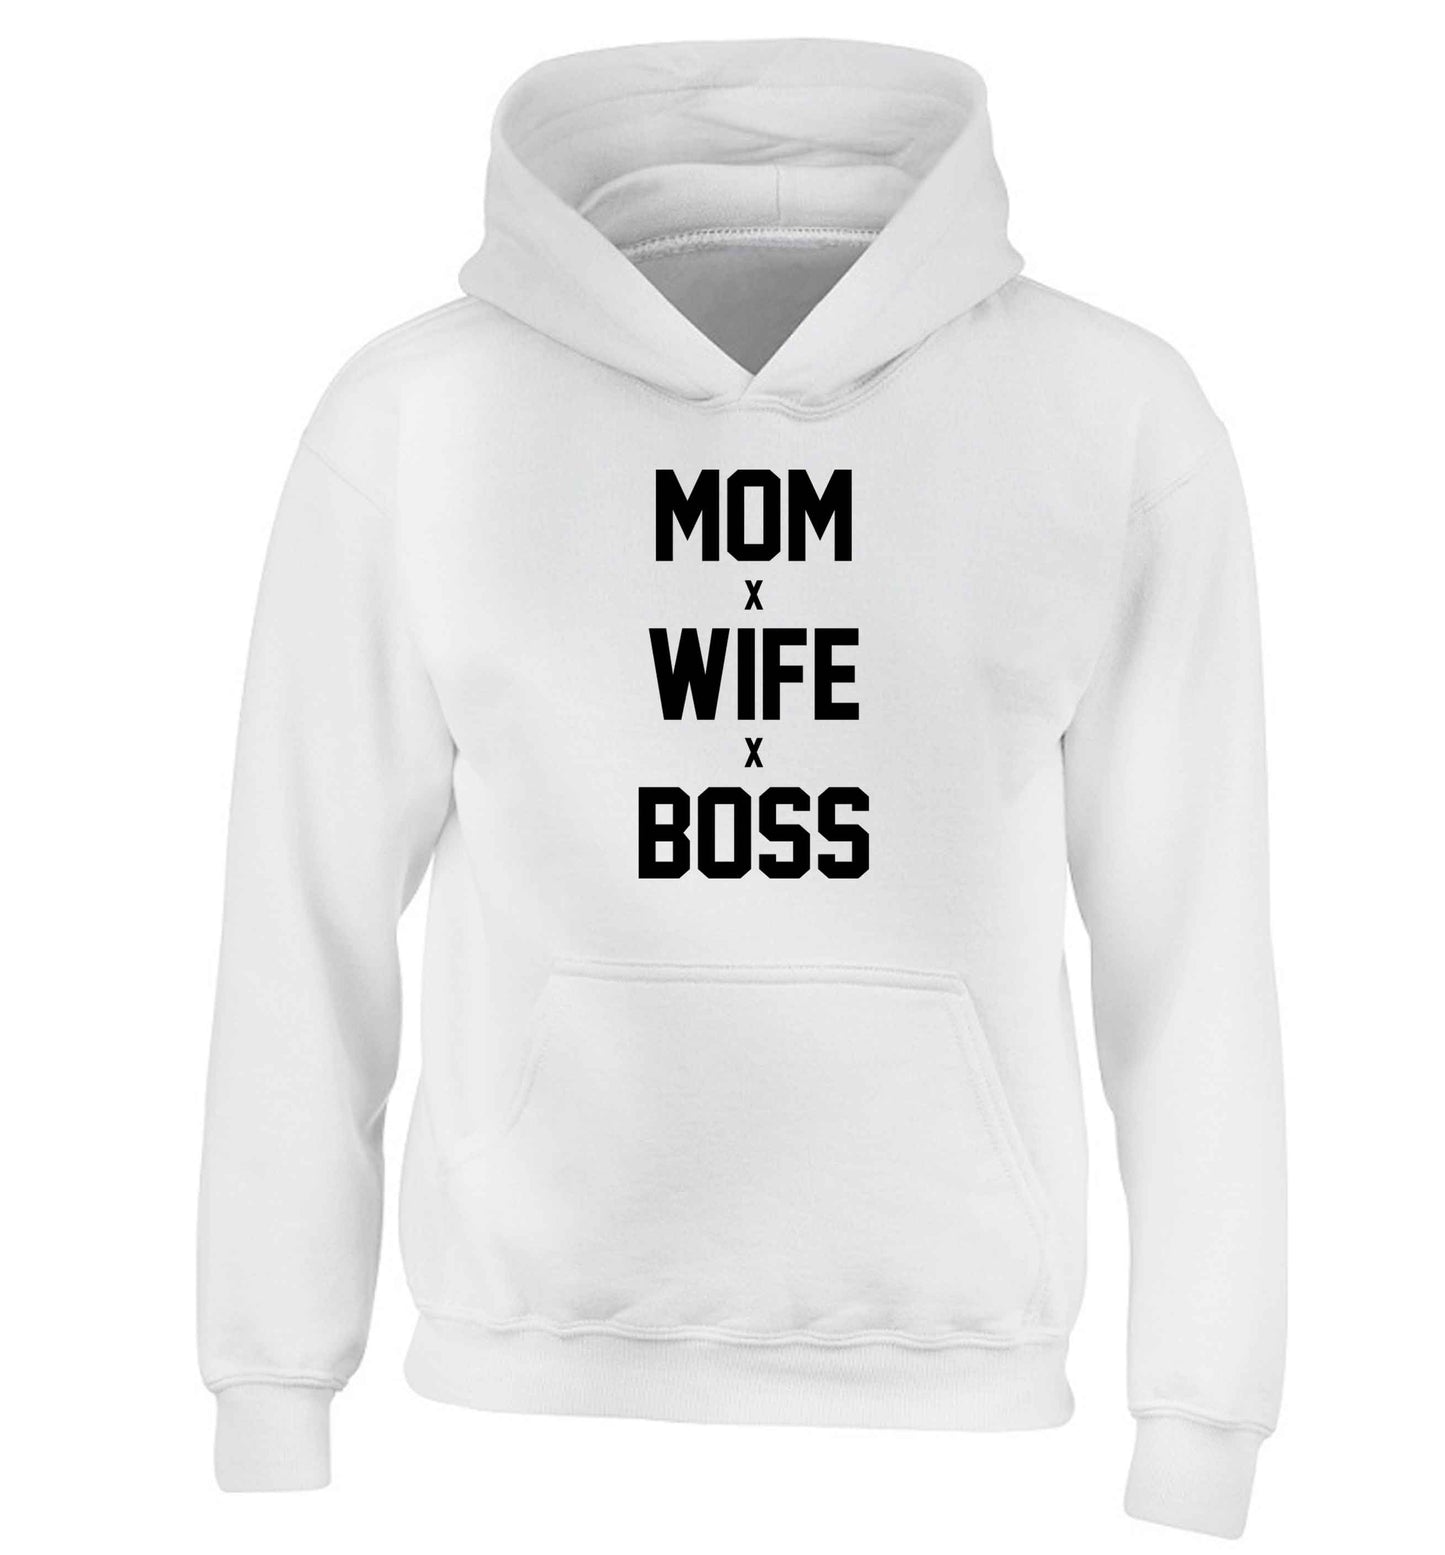 Mum wife boss children's white hoodie 12-13 Years